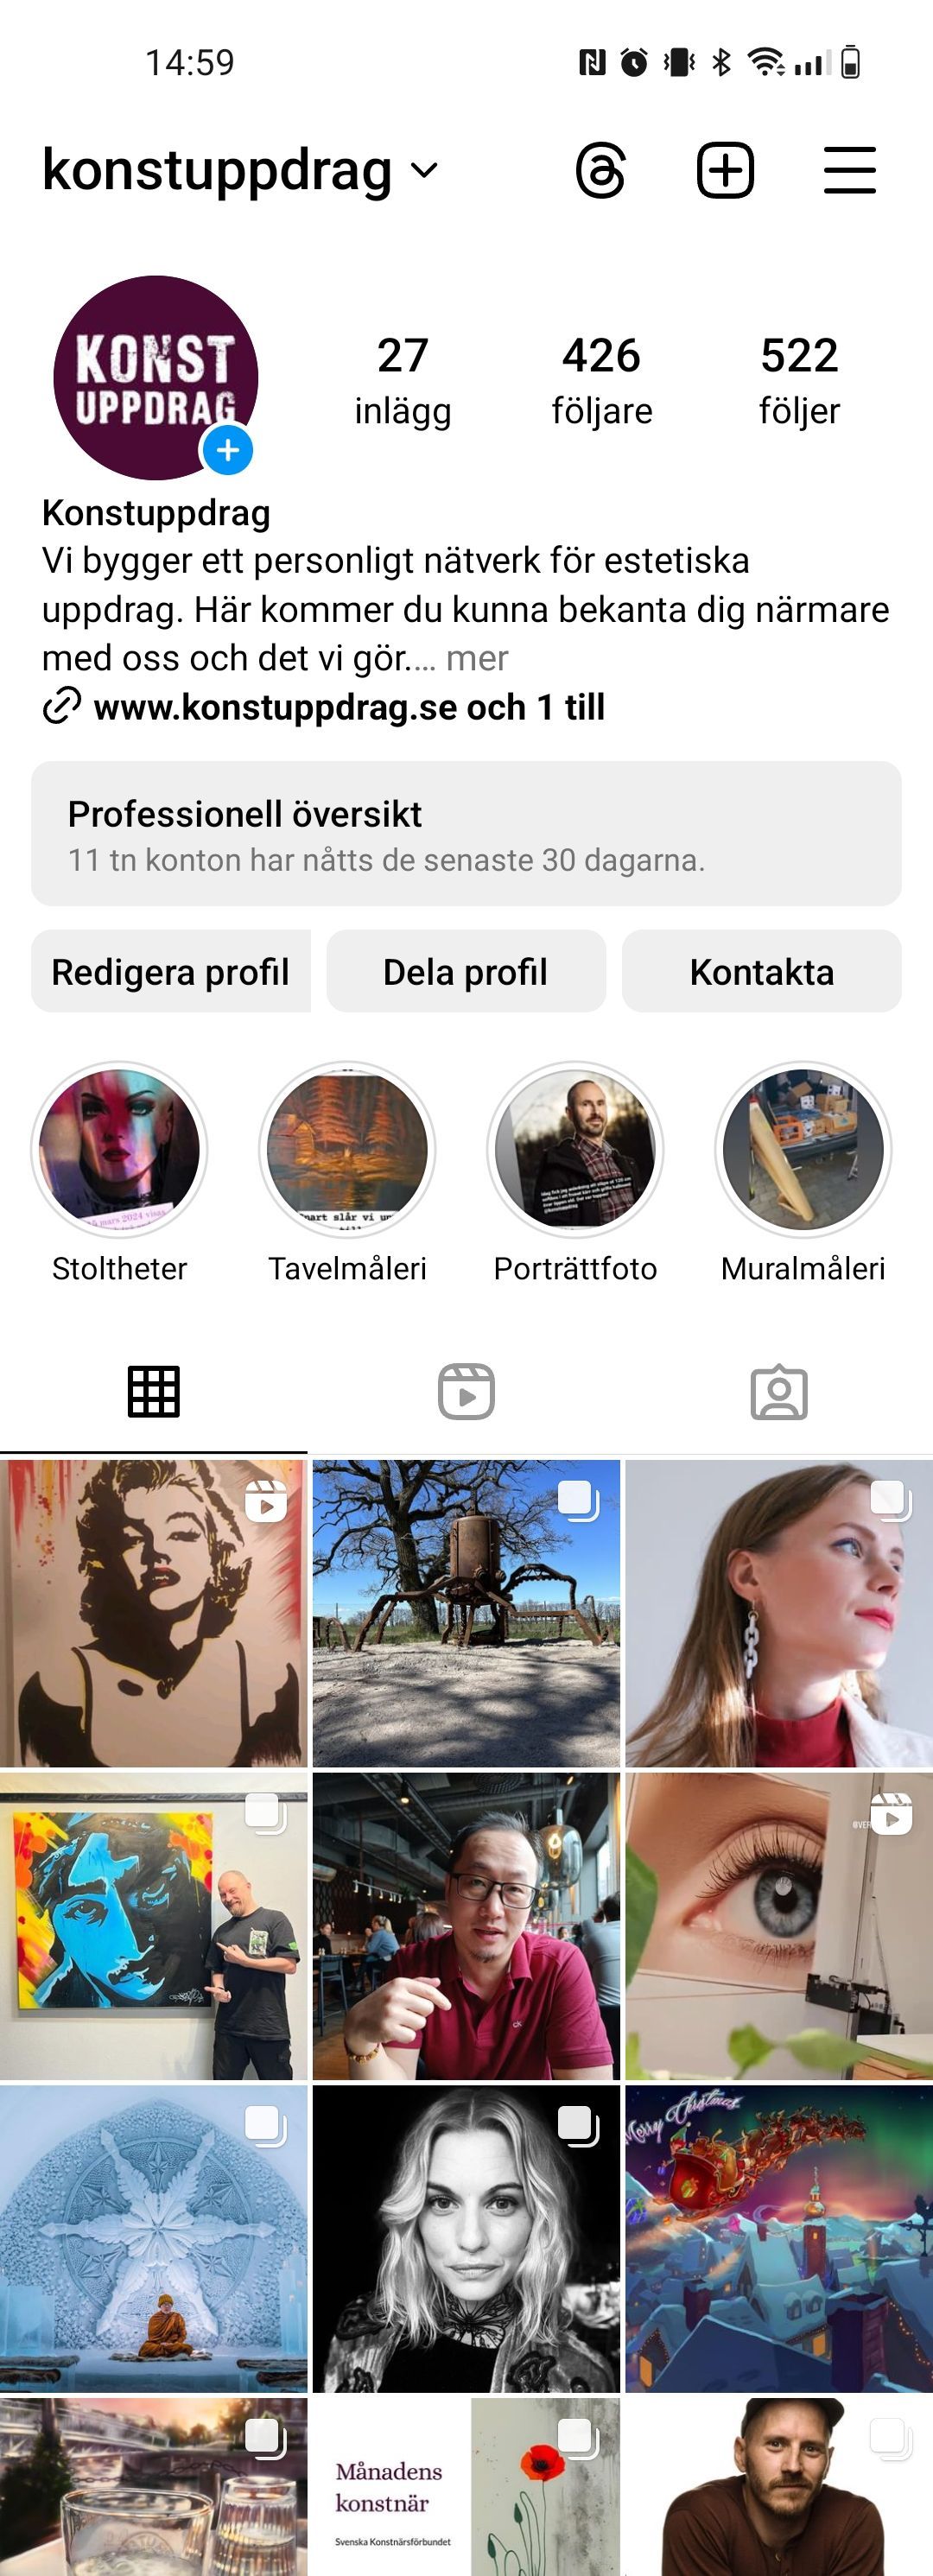 skärmdump av vår sida på Instagram